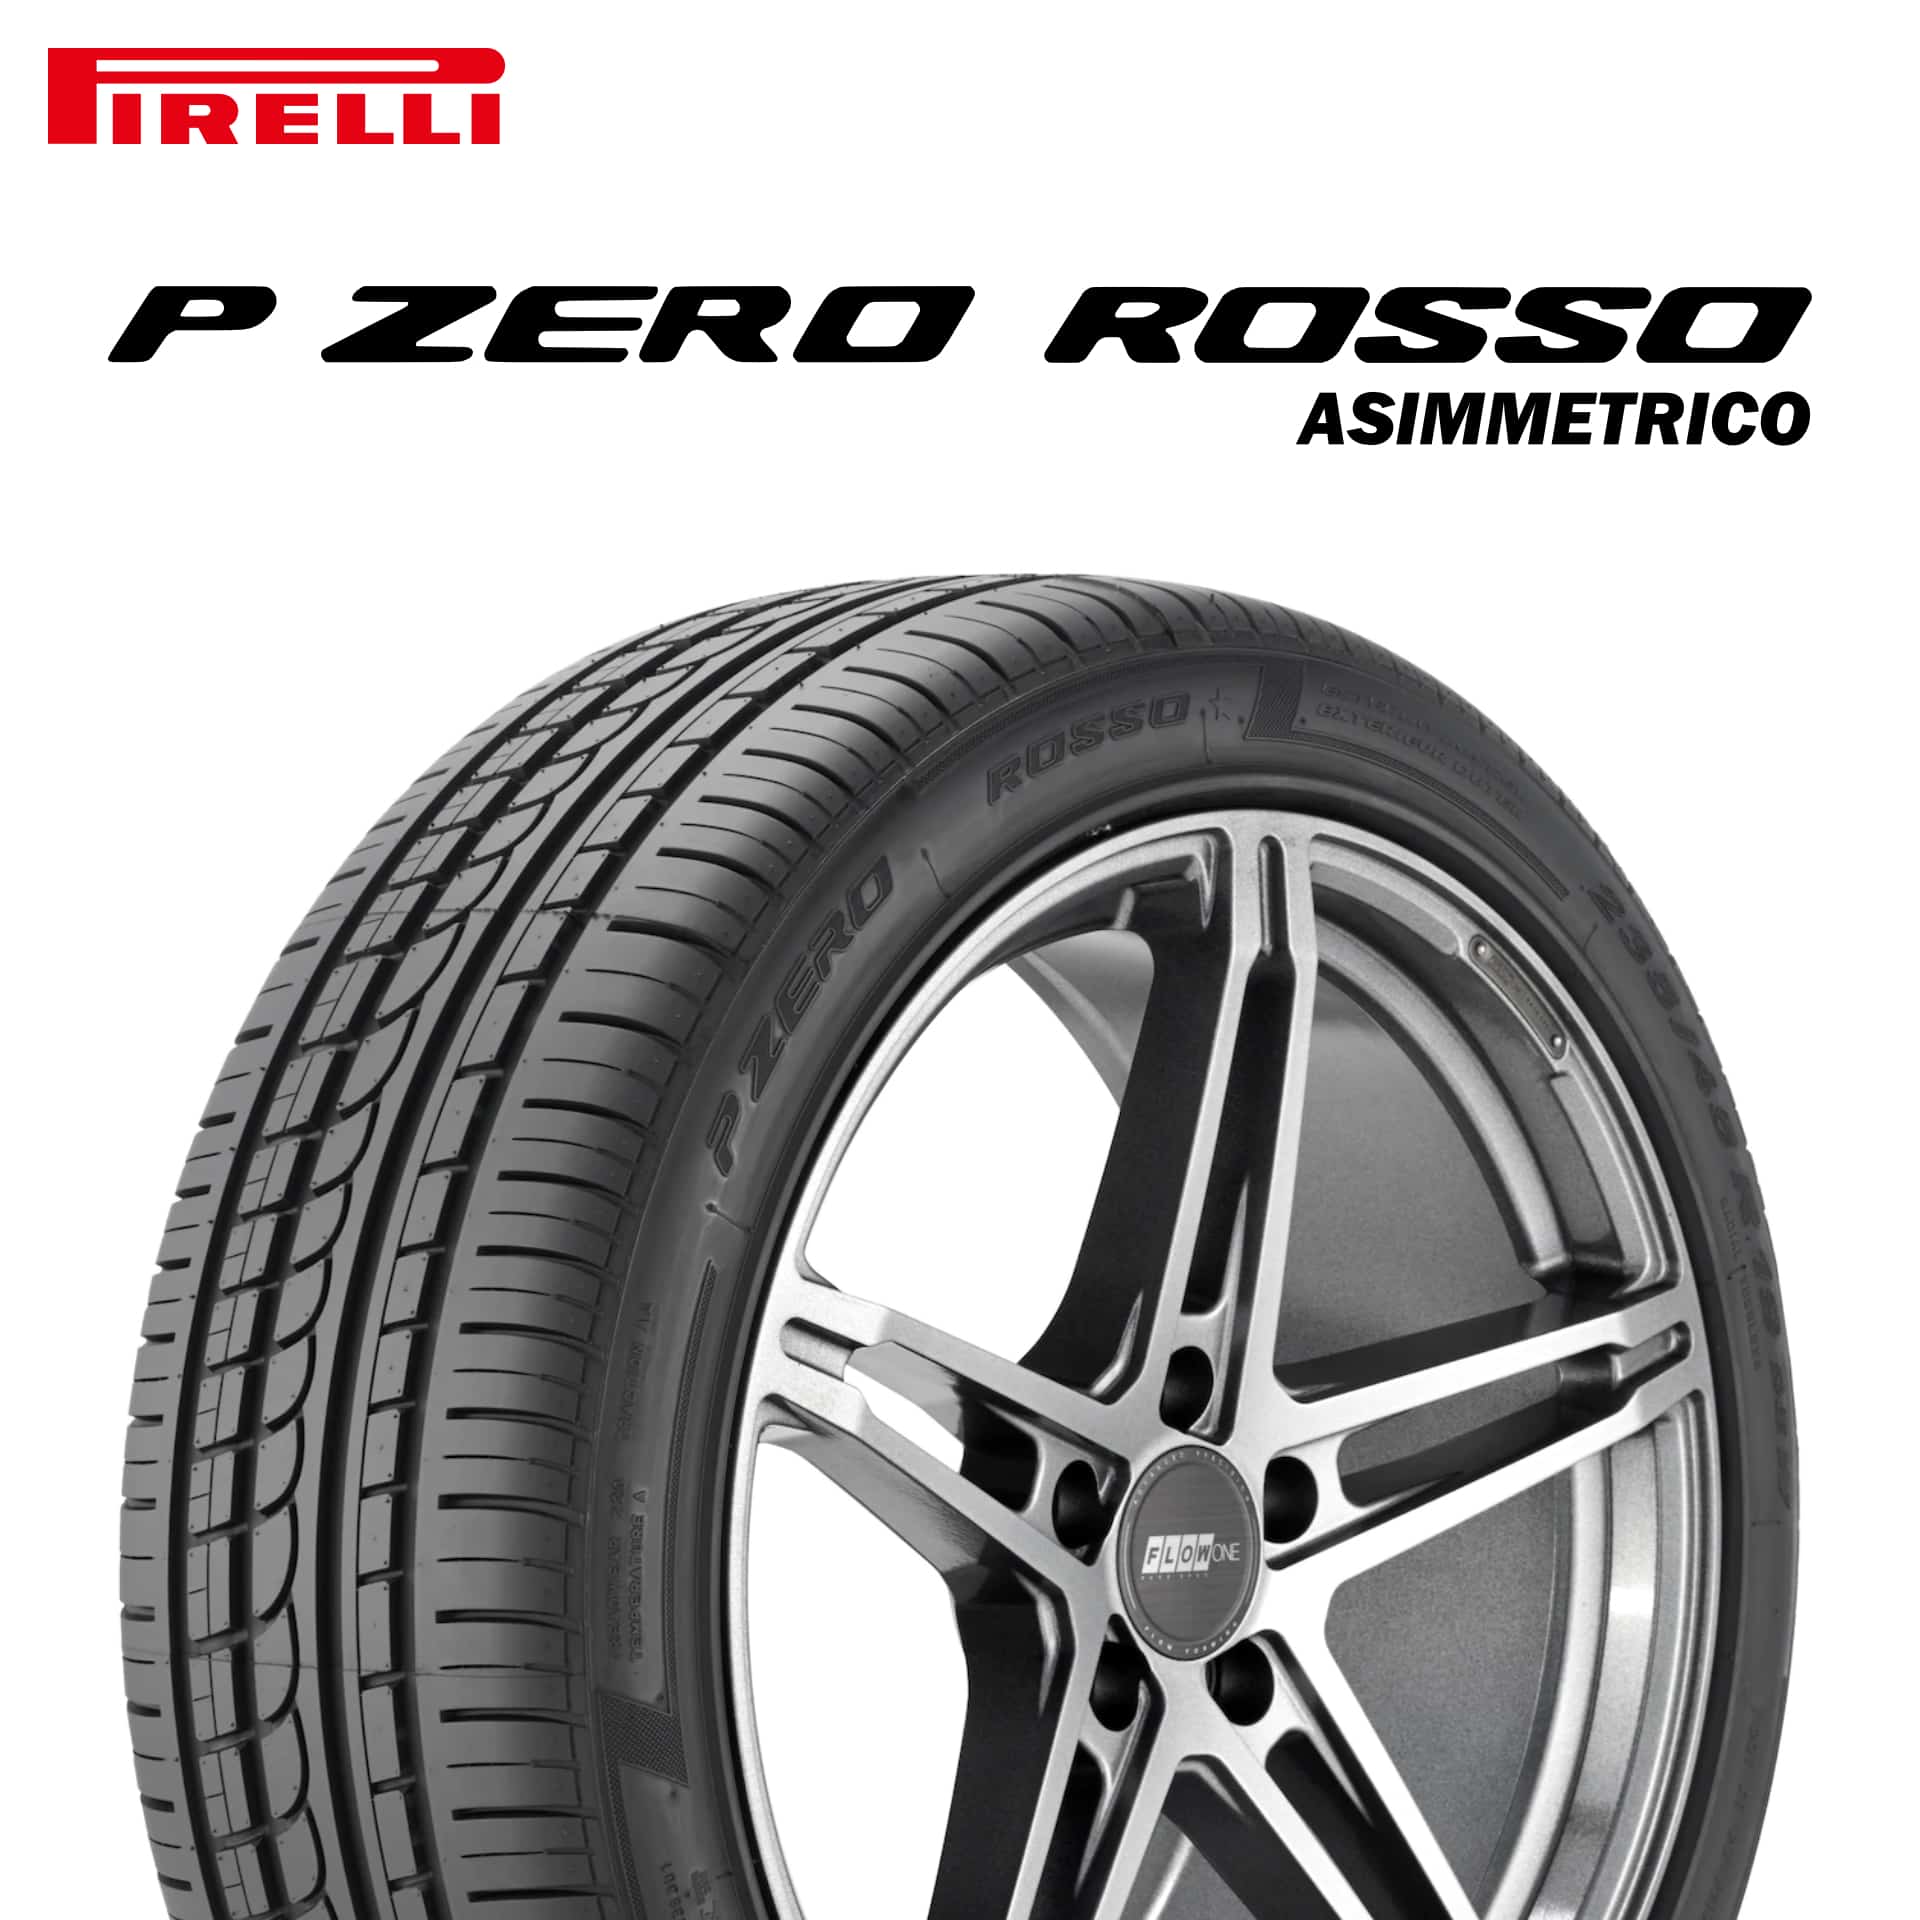 22年製 285/30R18 (93Y) N4 ピレリ P ZERO ROSSO ASIMMETRICO (ピーゼロ ロッソ アシンメトリコ) ポルシェ承認タイヤ 18インチ 新品